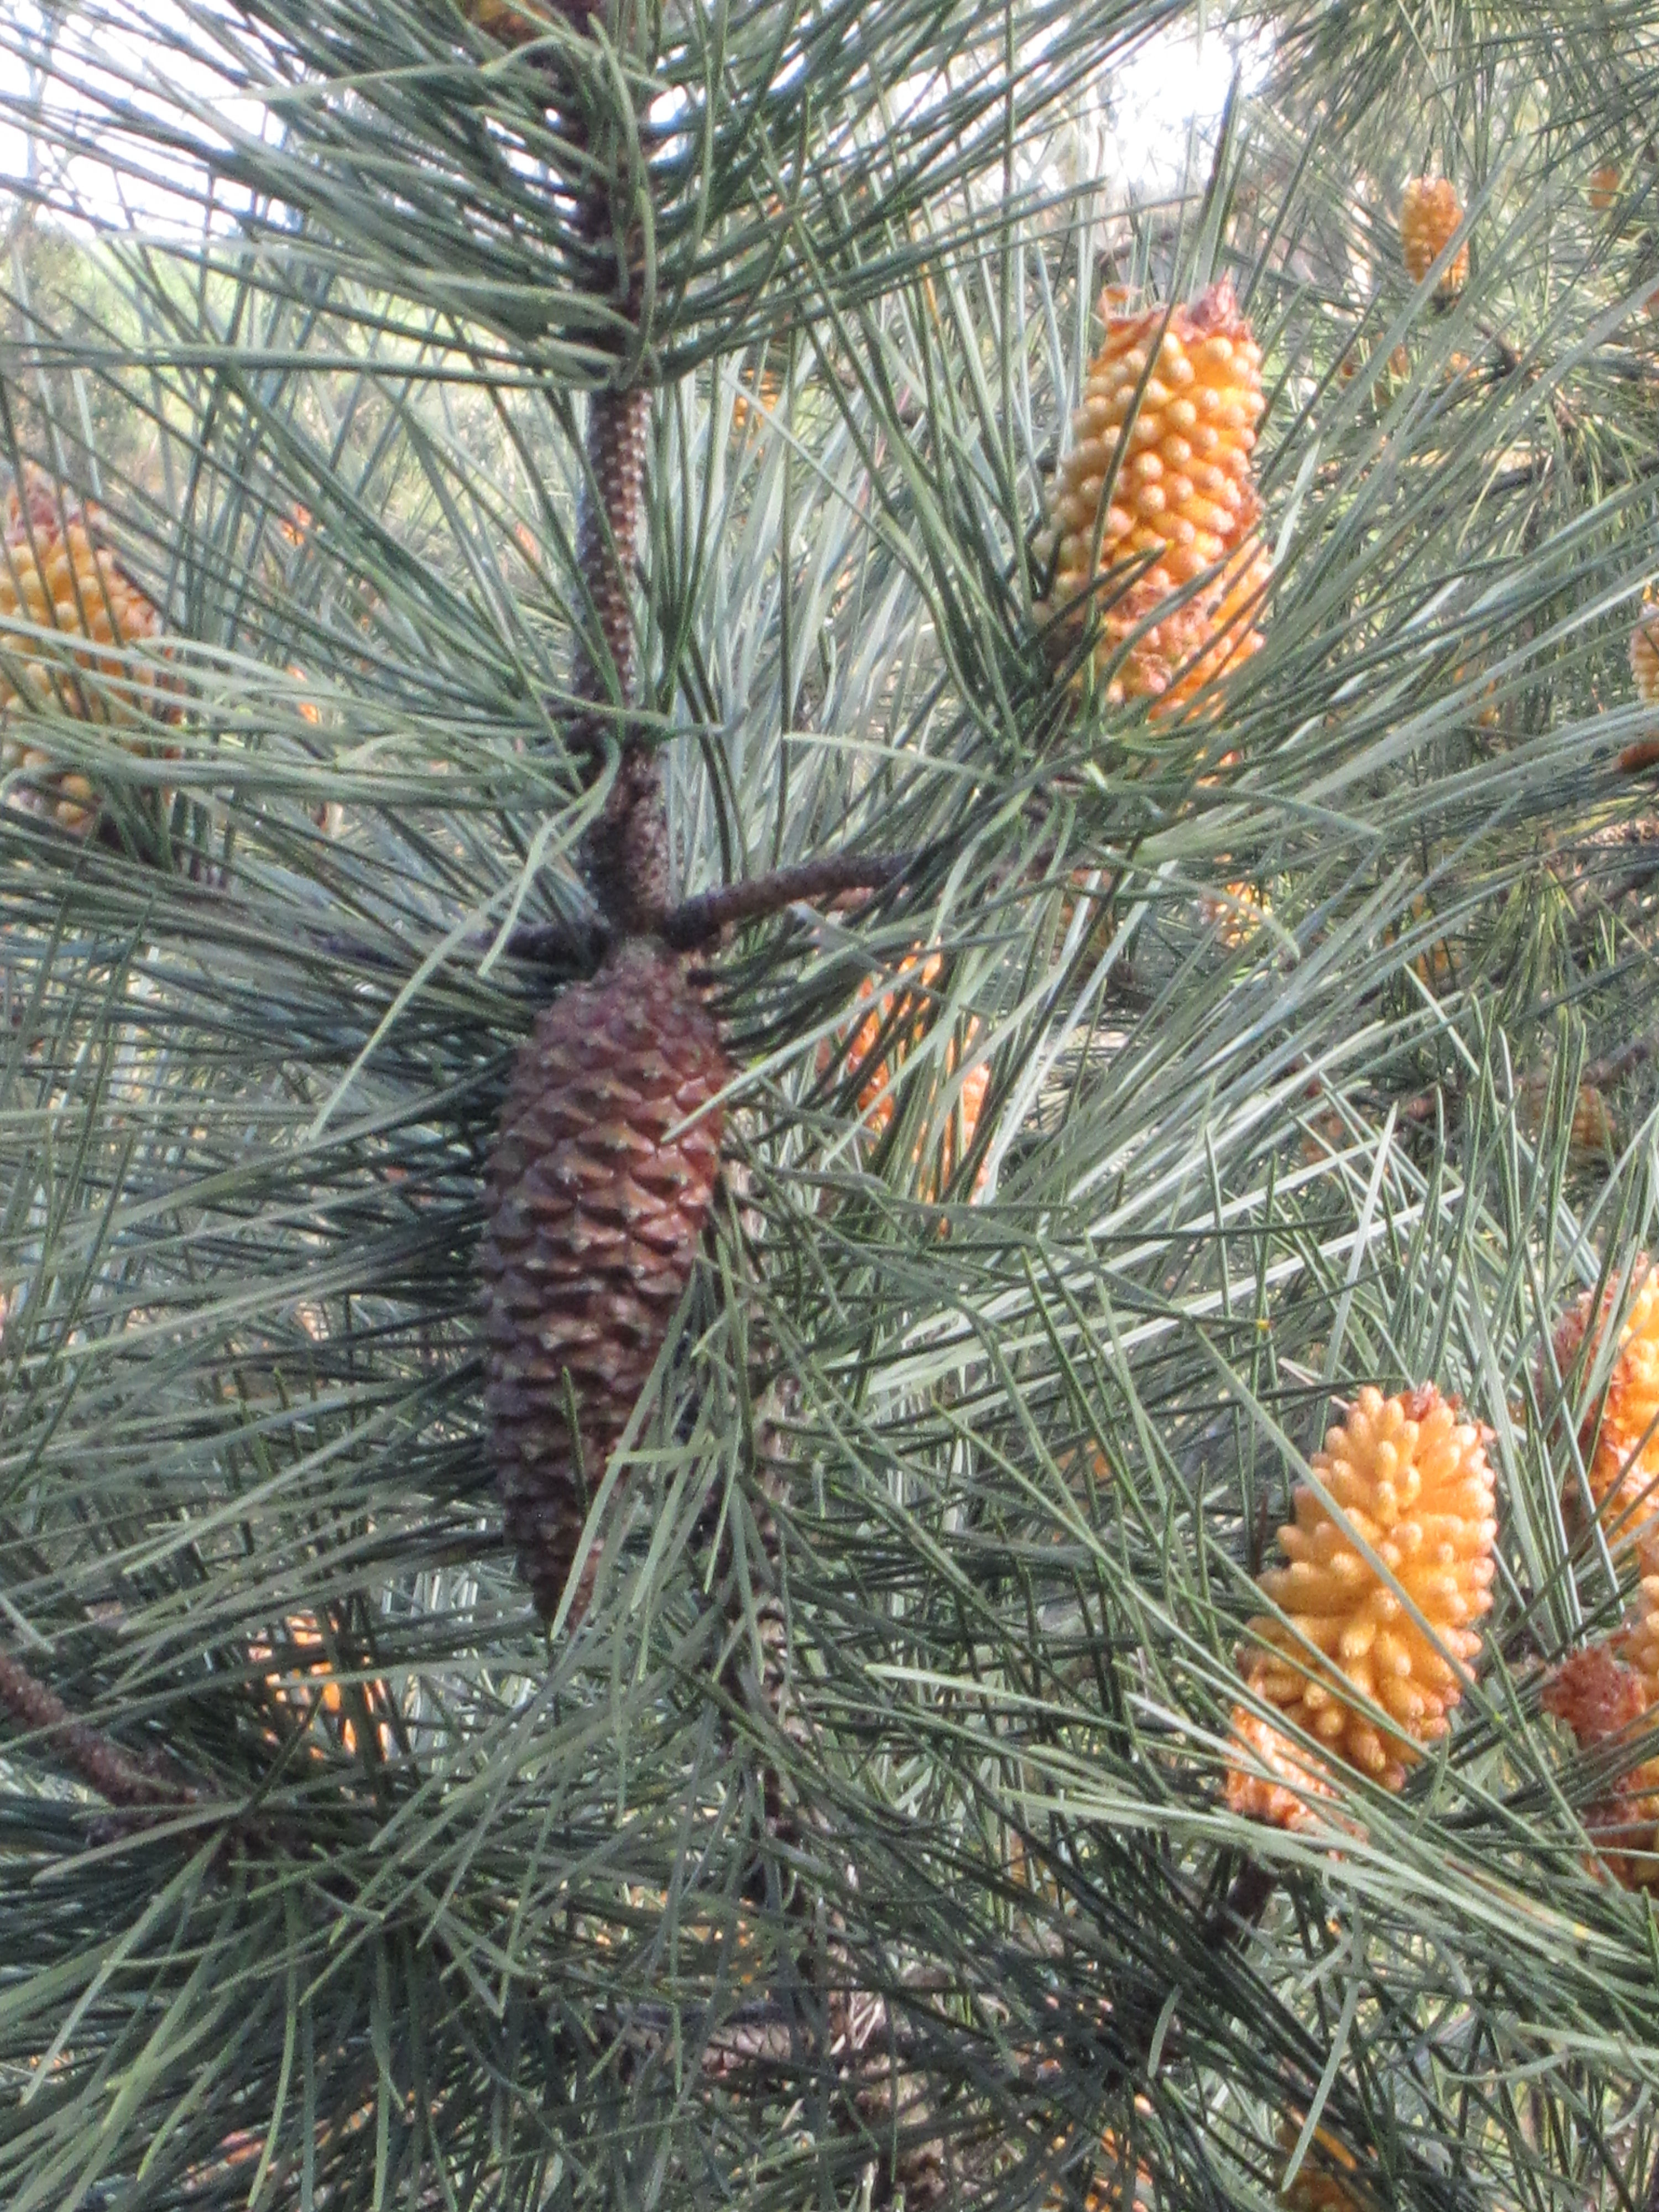 Pinus: hojas aciculares en braquiblastos; conos masculinos en grupos; estróbilo